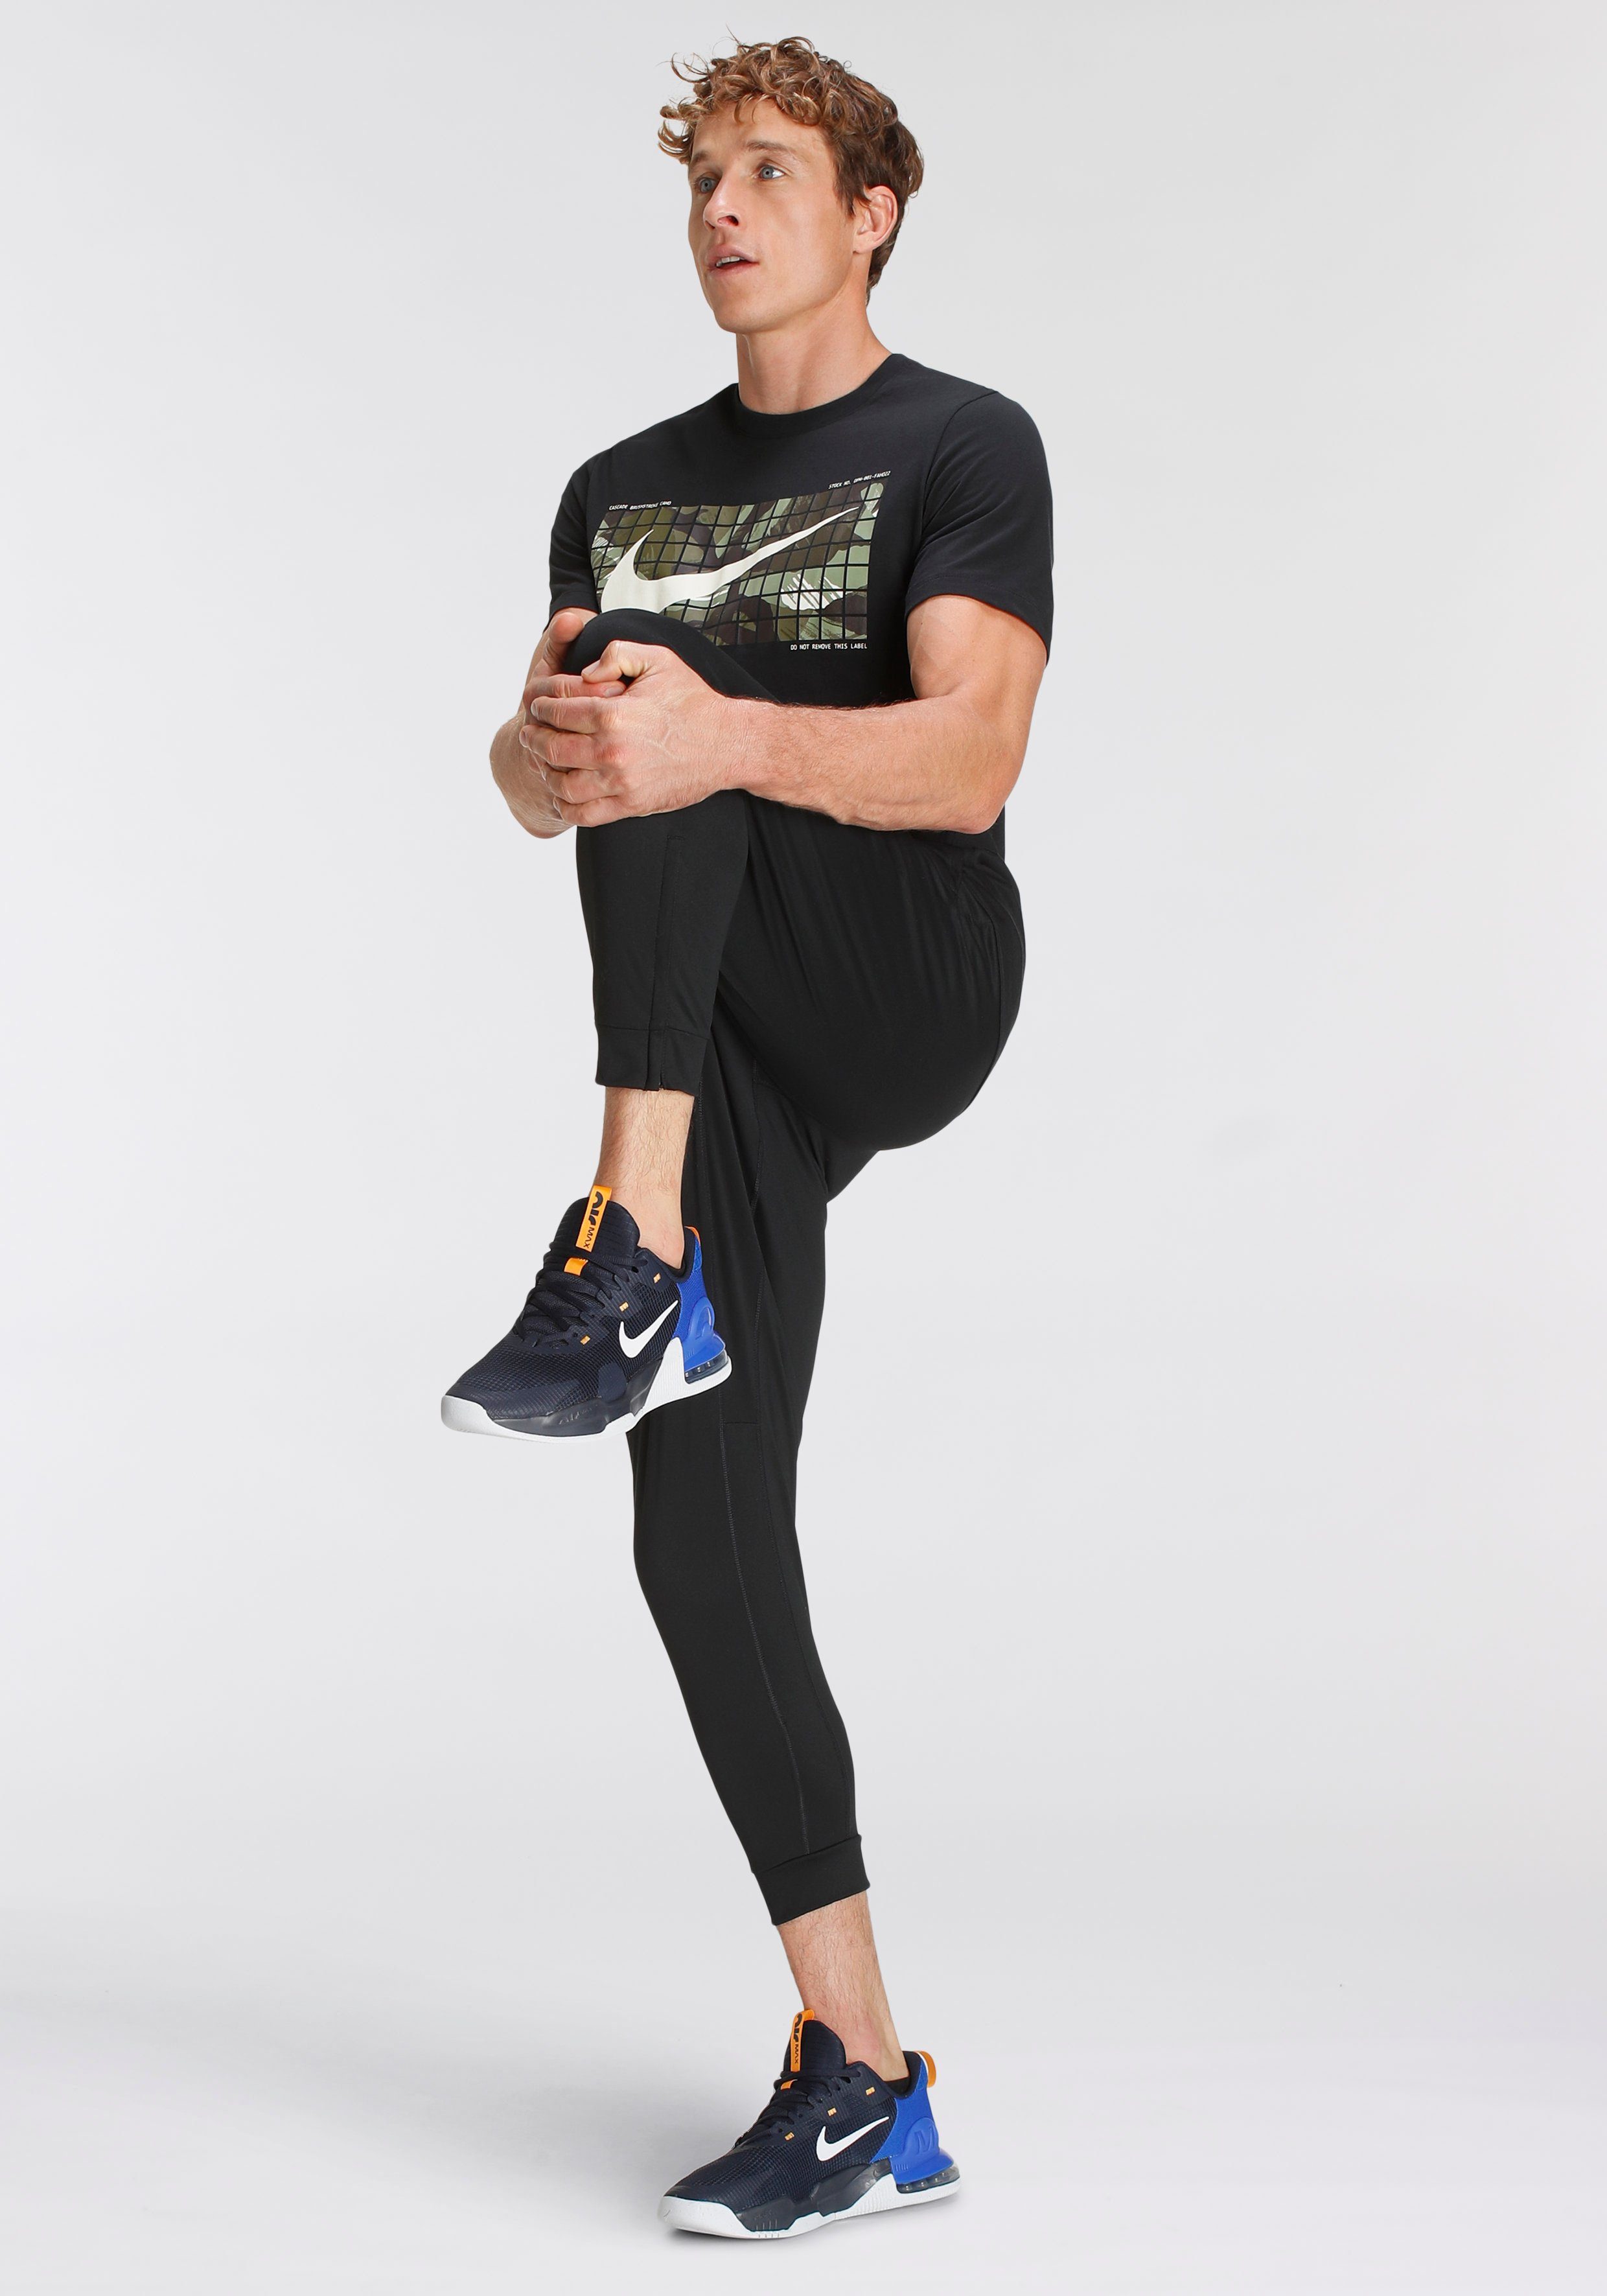 Nike Trainingsshirt BLACK DRI-FIT T-SHIRT CAMO FITNESS MEN'S